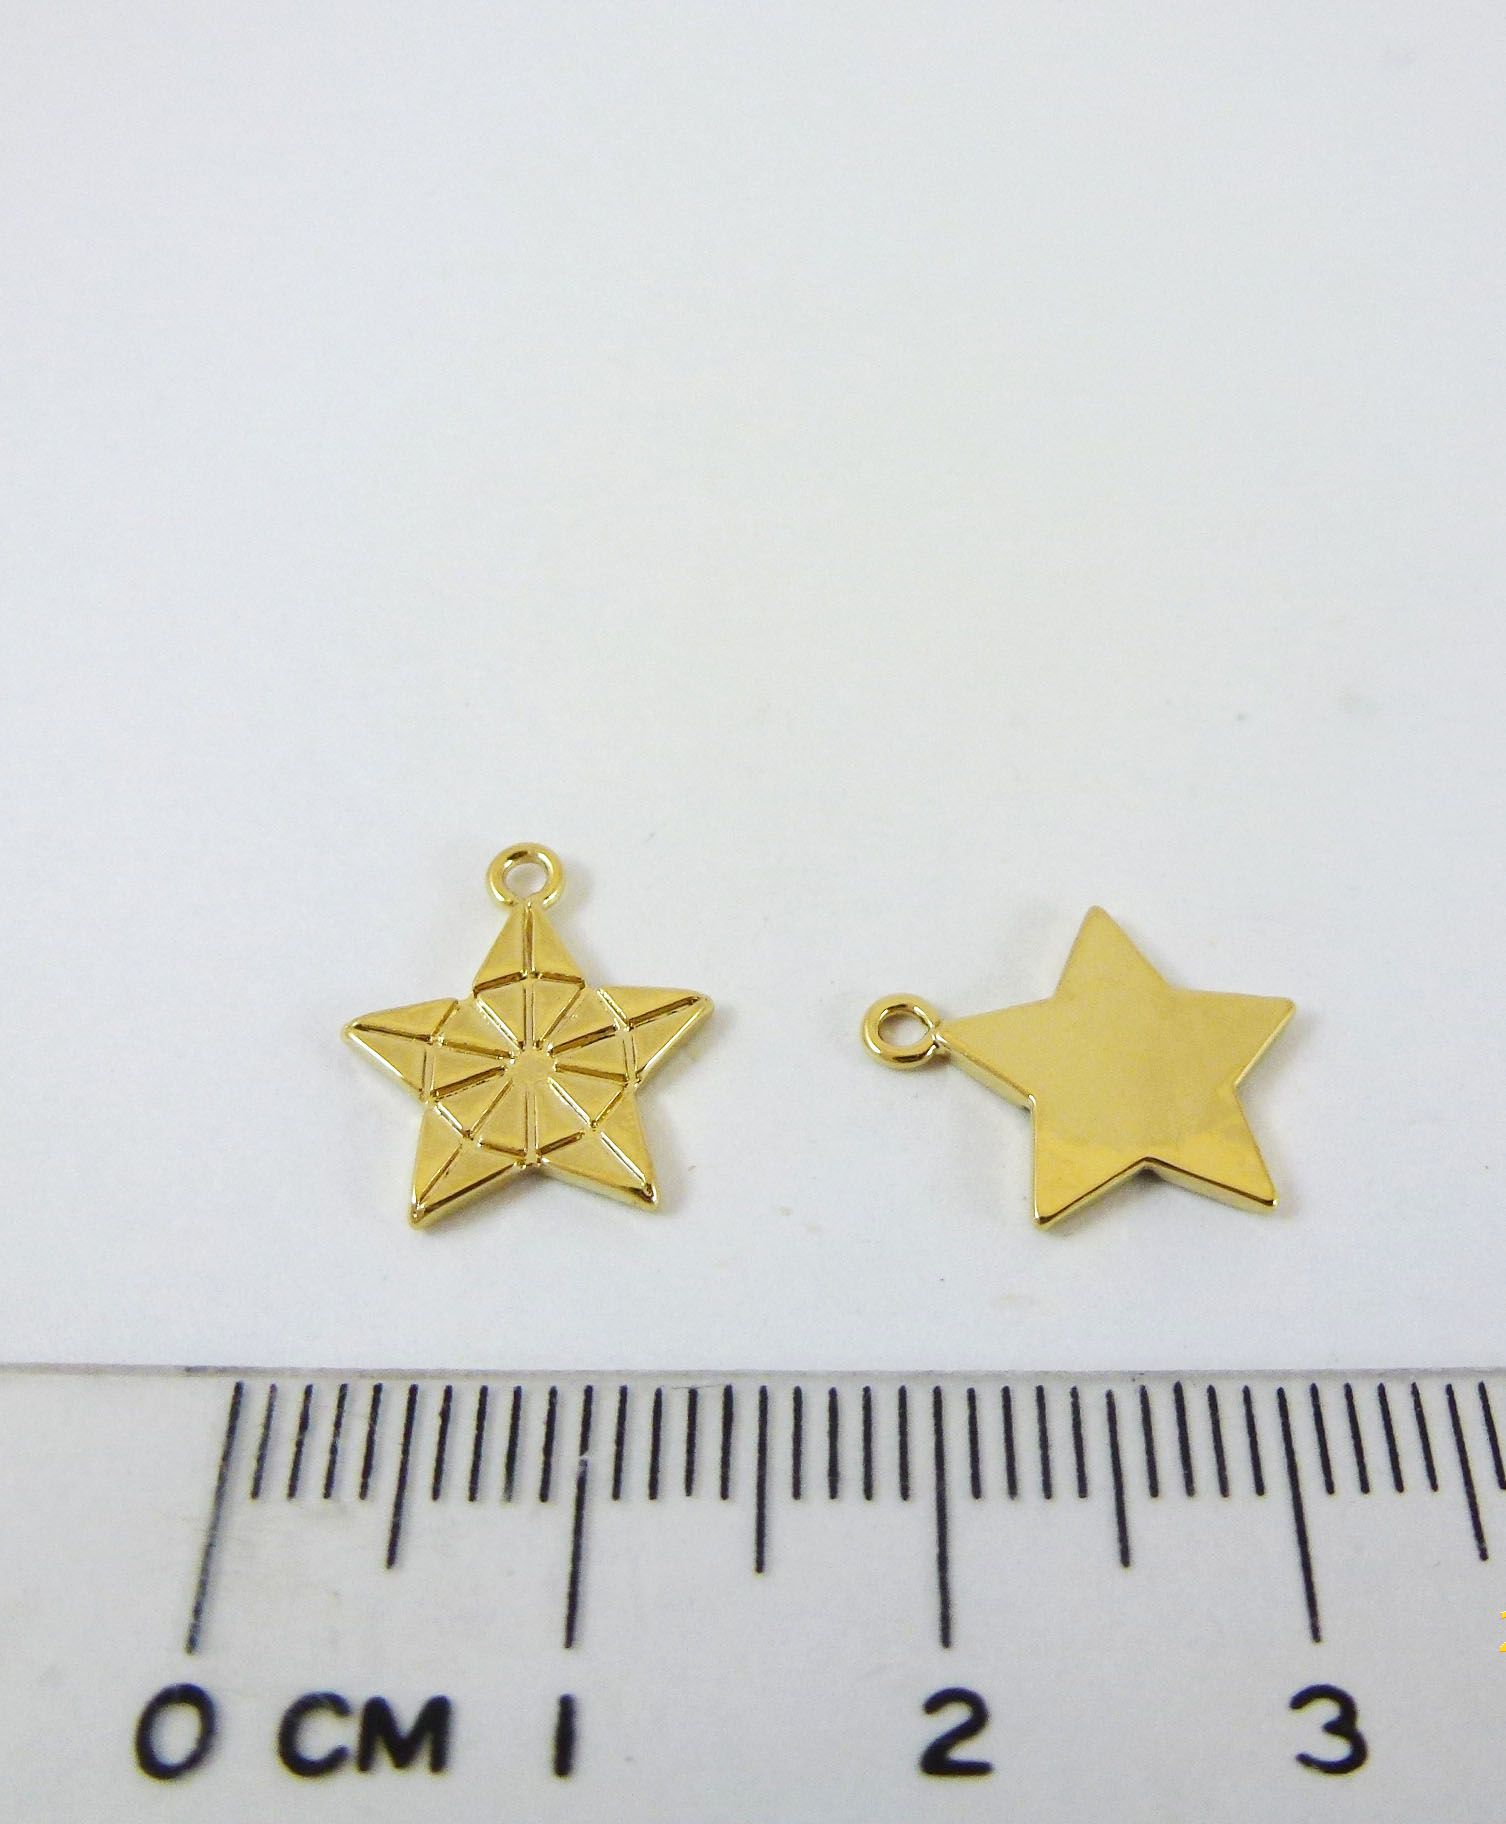 12mm銅鍍金色單孔環紋星星